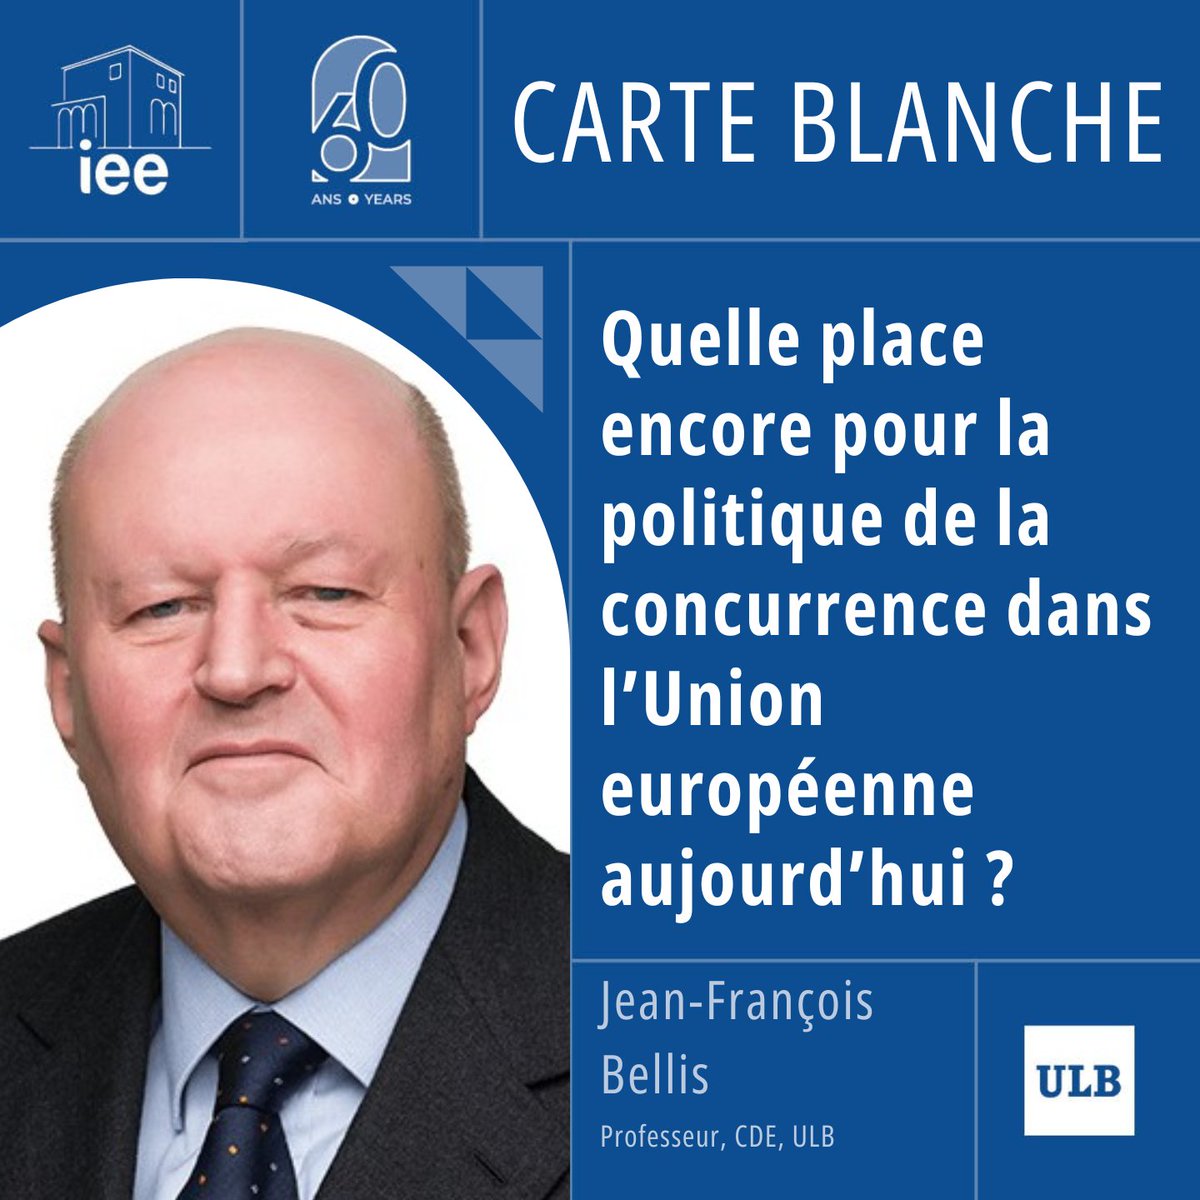 📝Notre série de cartes blanches “60 ans en 6000 signes” se poursuit avec l'article de Professeur Jean-François Bellis du @CDE_ULB. Lire la carte blanche 👉bit.ly/3Q42ayn #IEE60